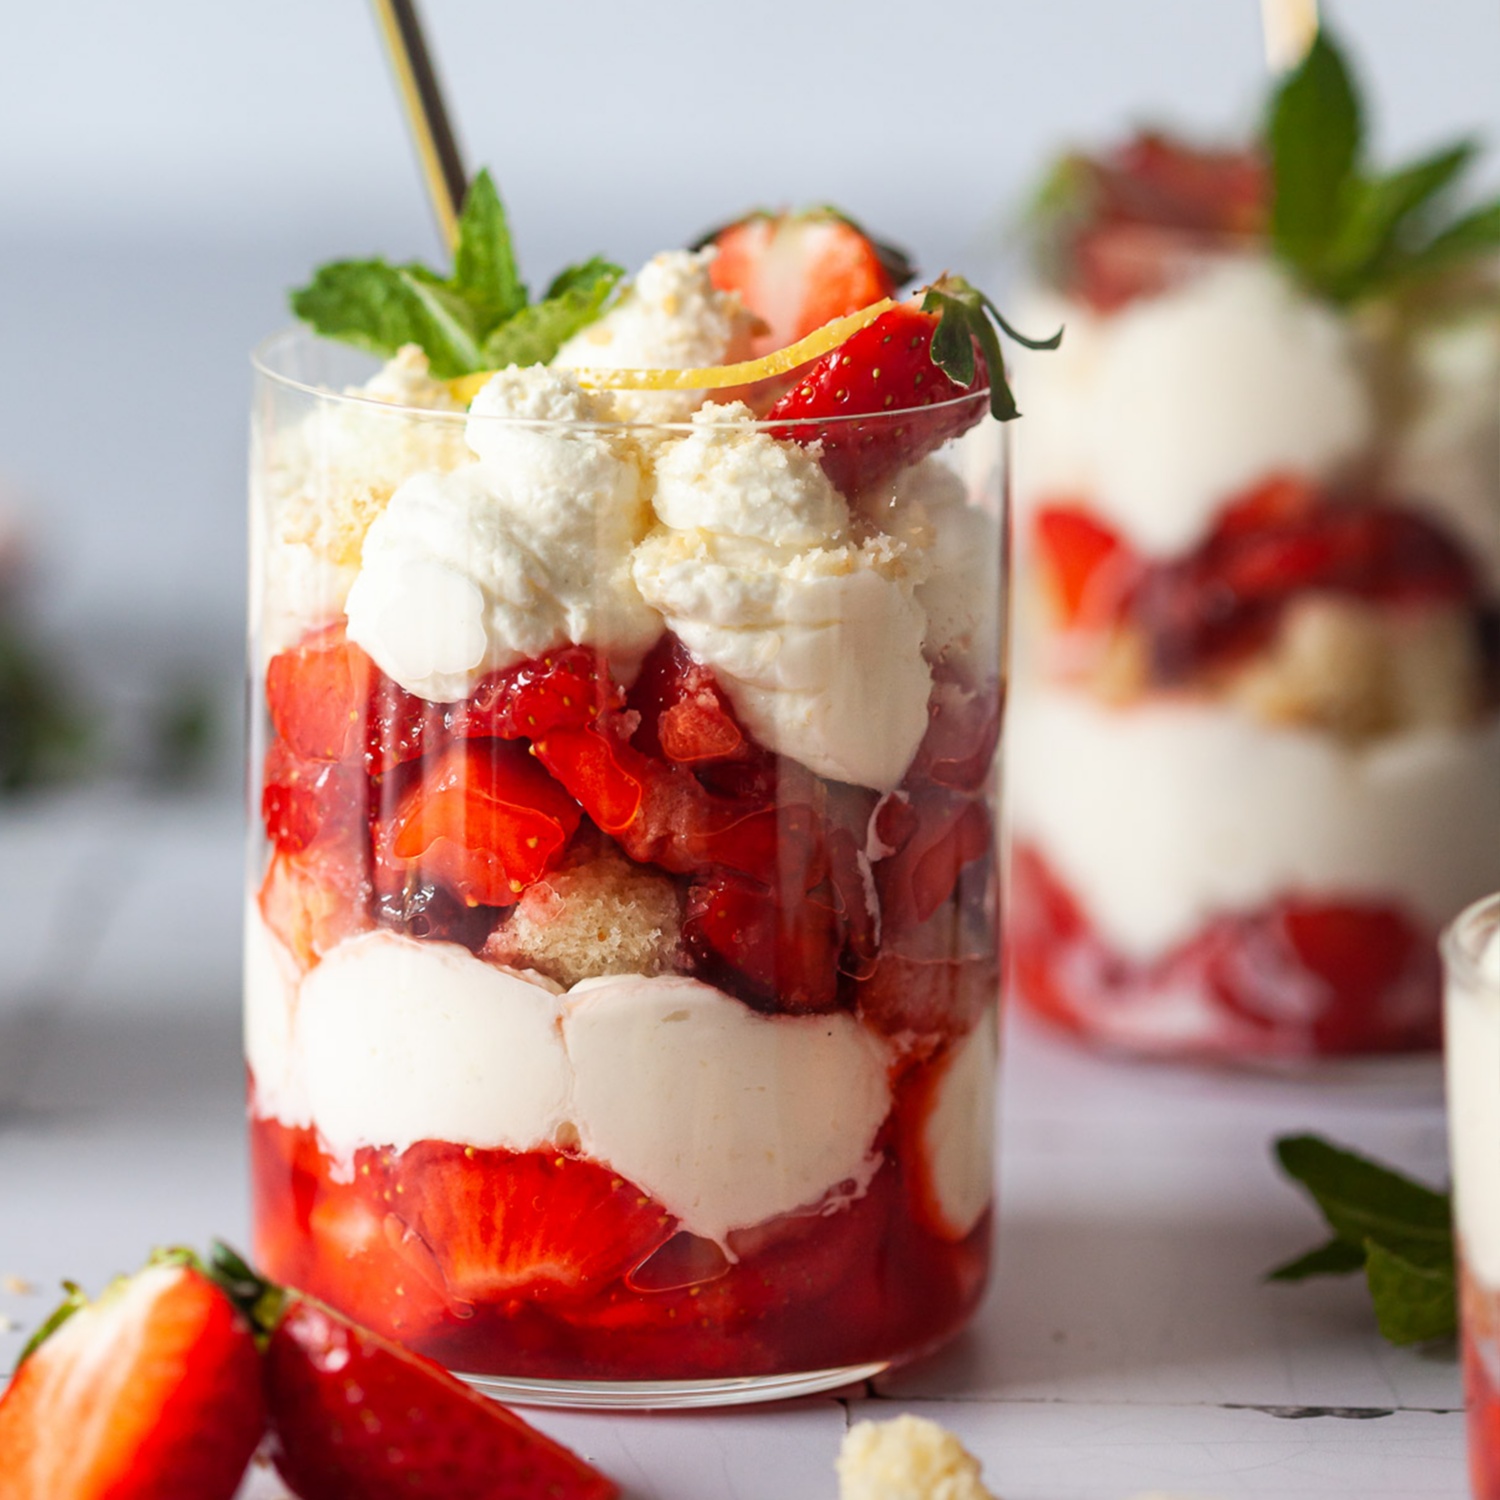 Erdbeer-Schicht-Dessert im Glas